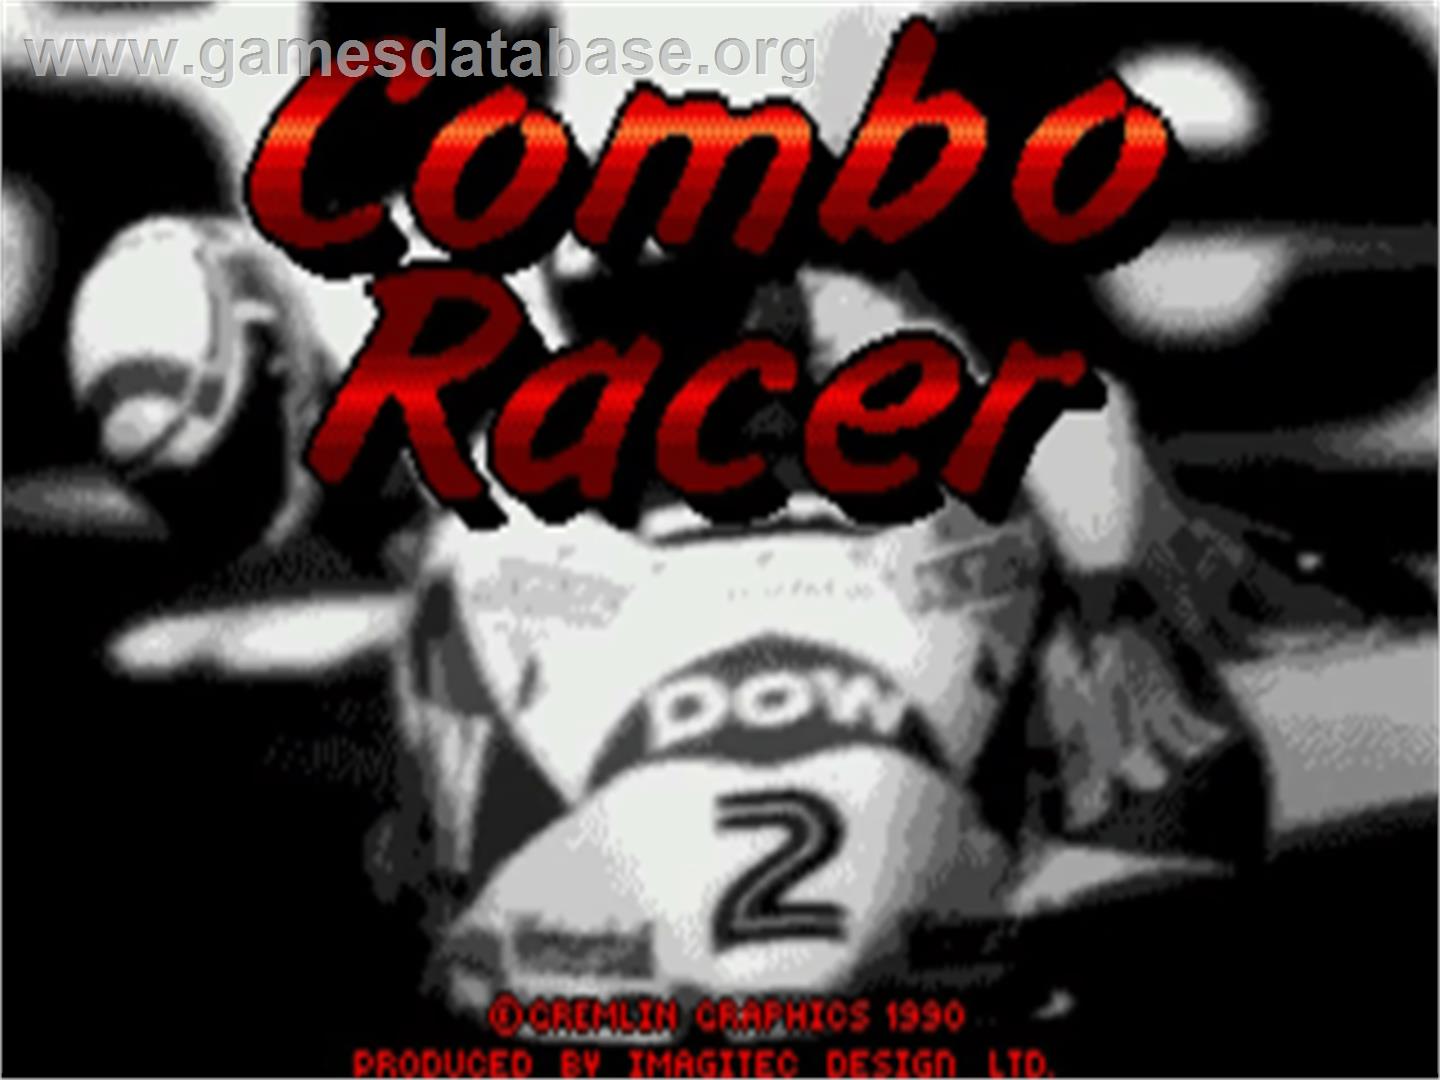 Combo Racer - Commodore Amiga - Artwork - Title Screen